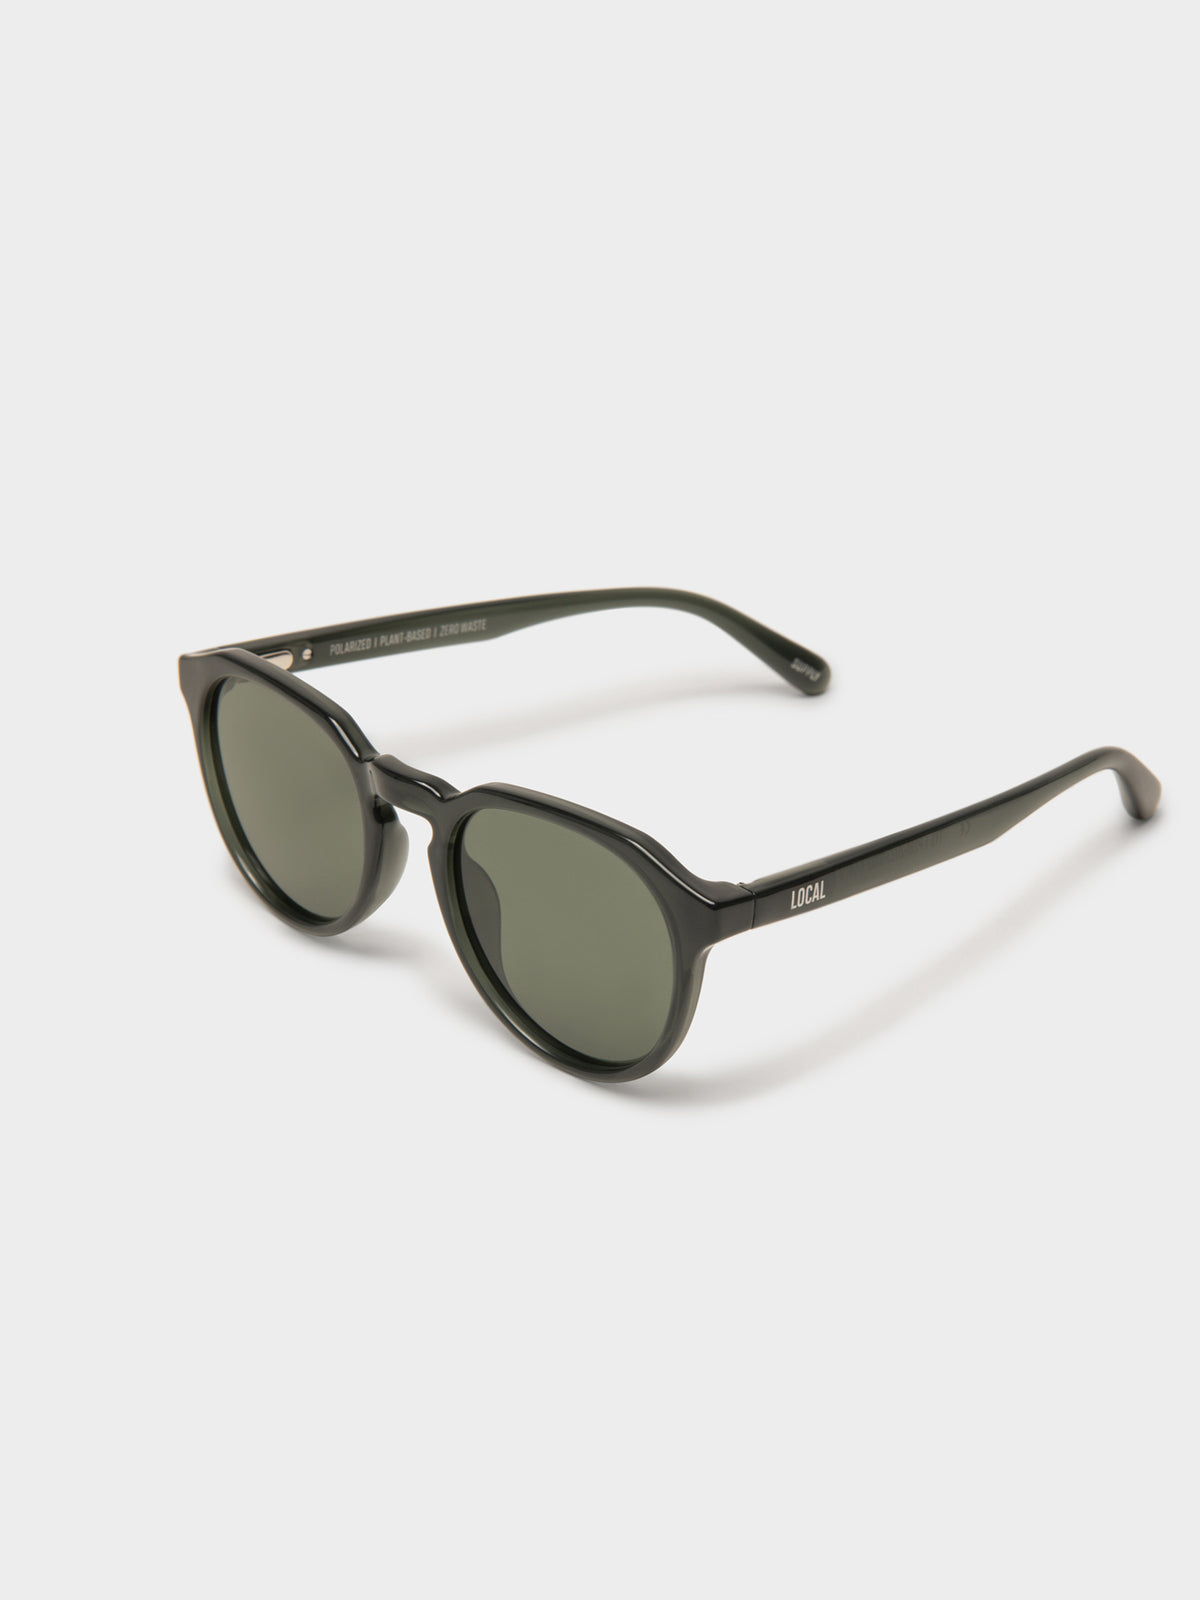 DRW Polarised Sunglasses in Black